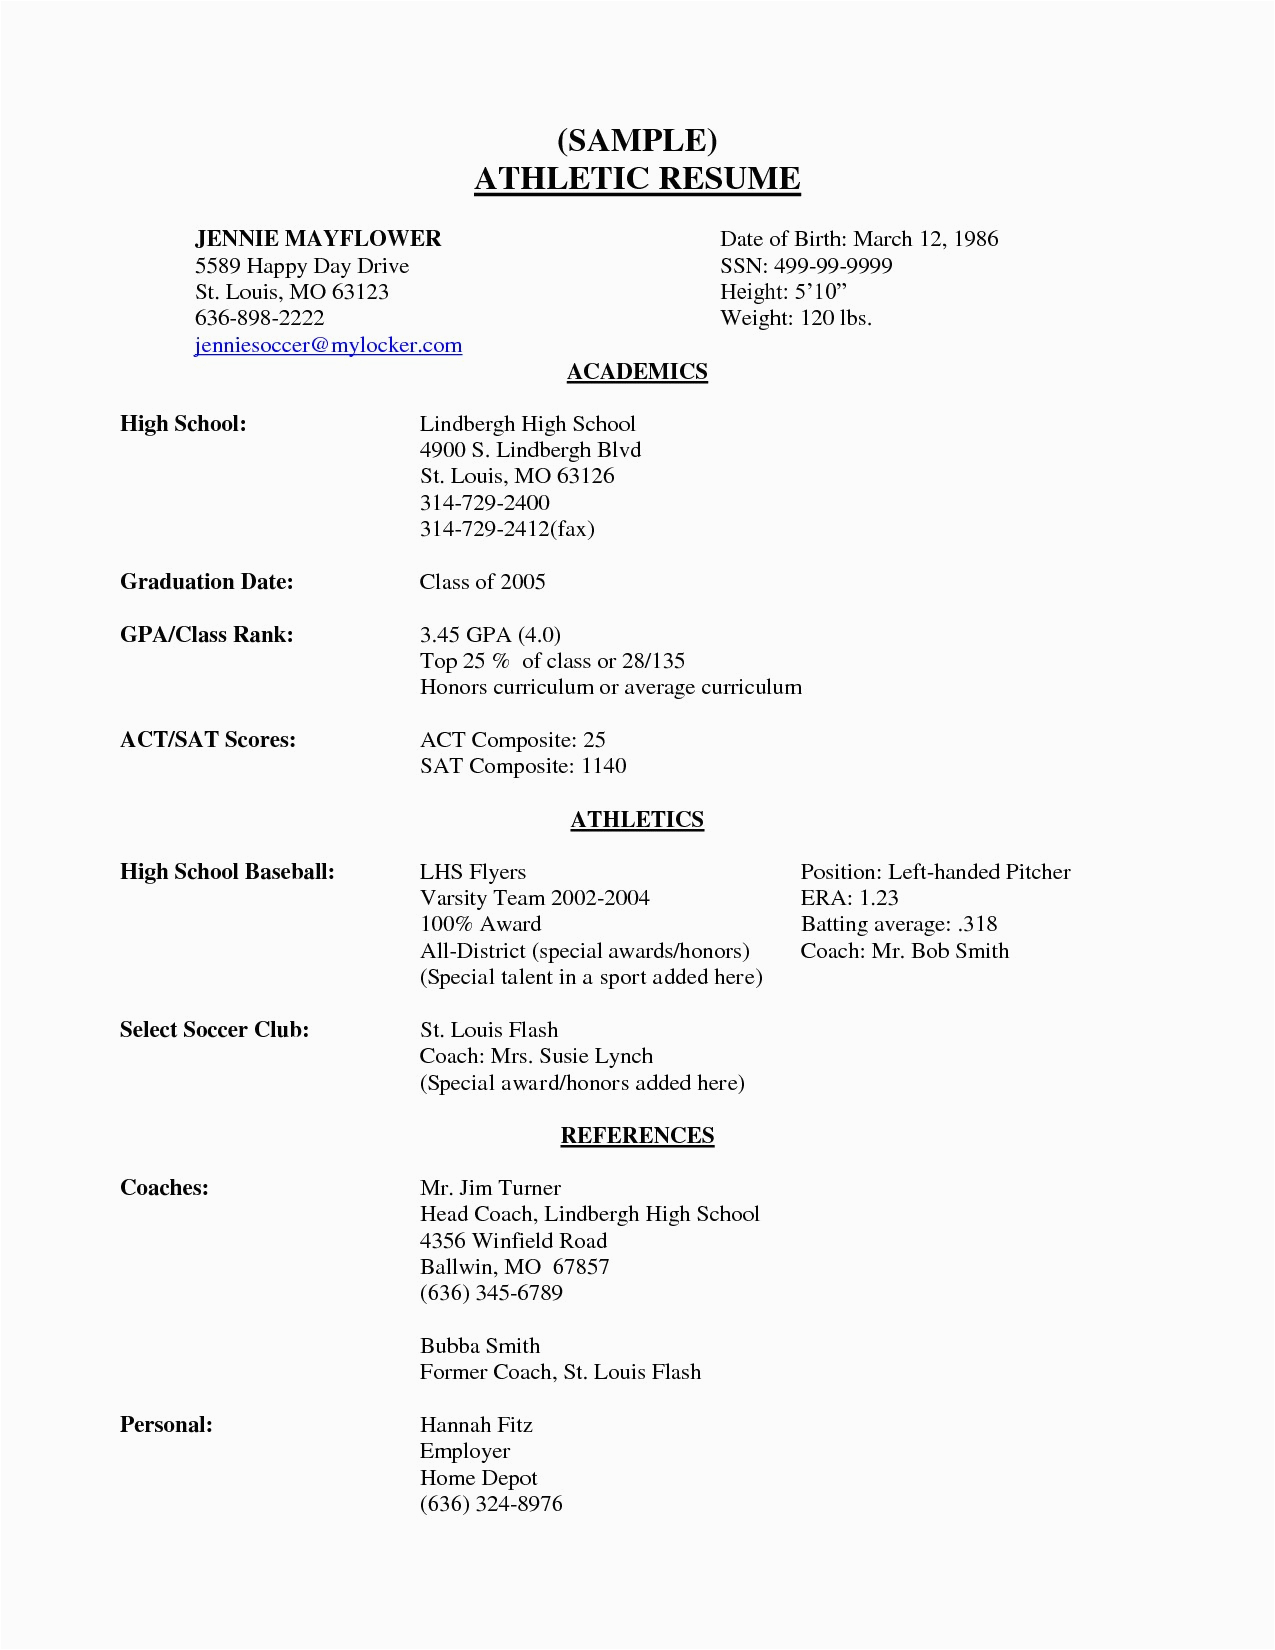 Sample Resume for High School Senior 14 Student athlete Resume Template Samples